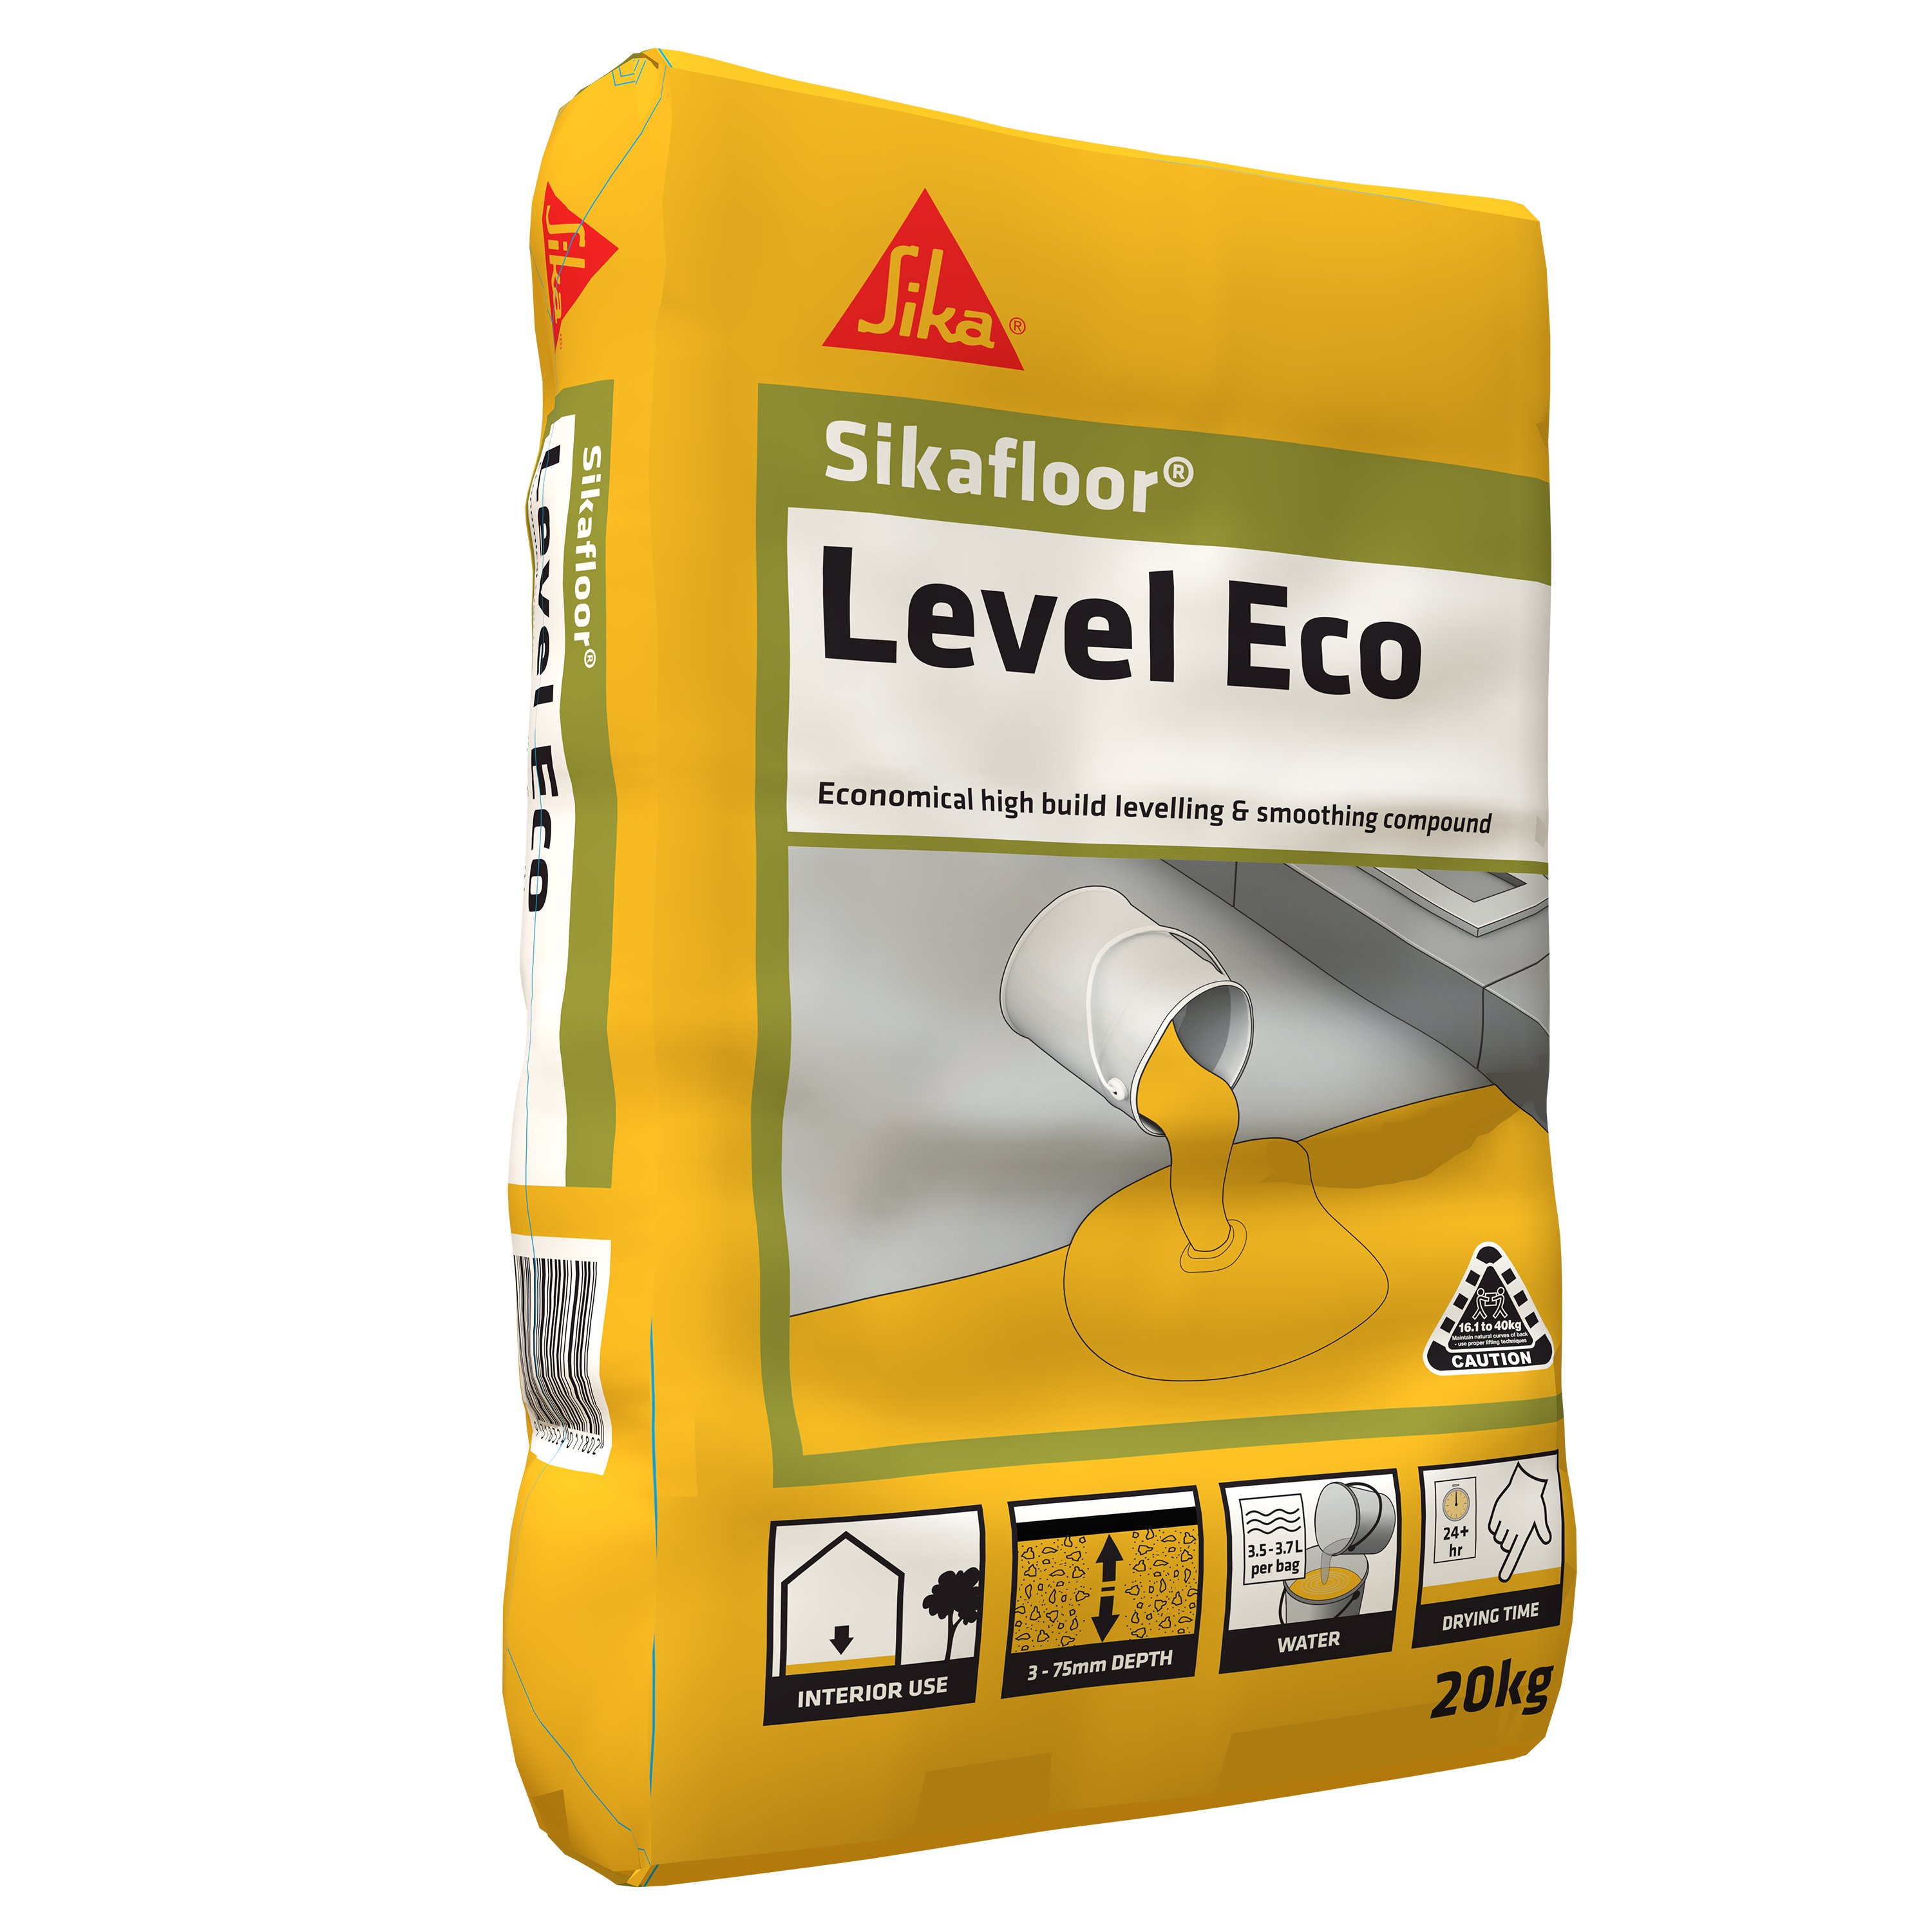 Level Eco